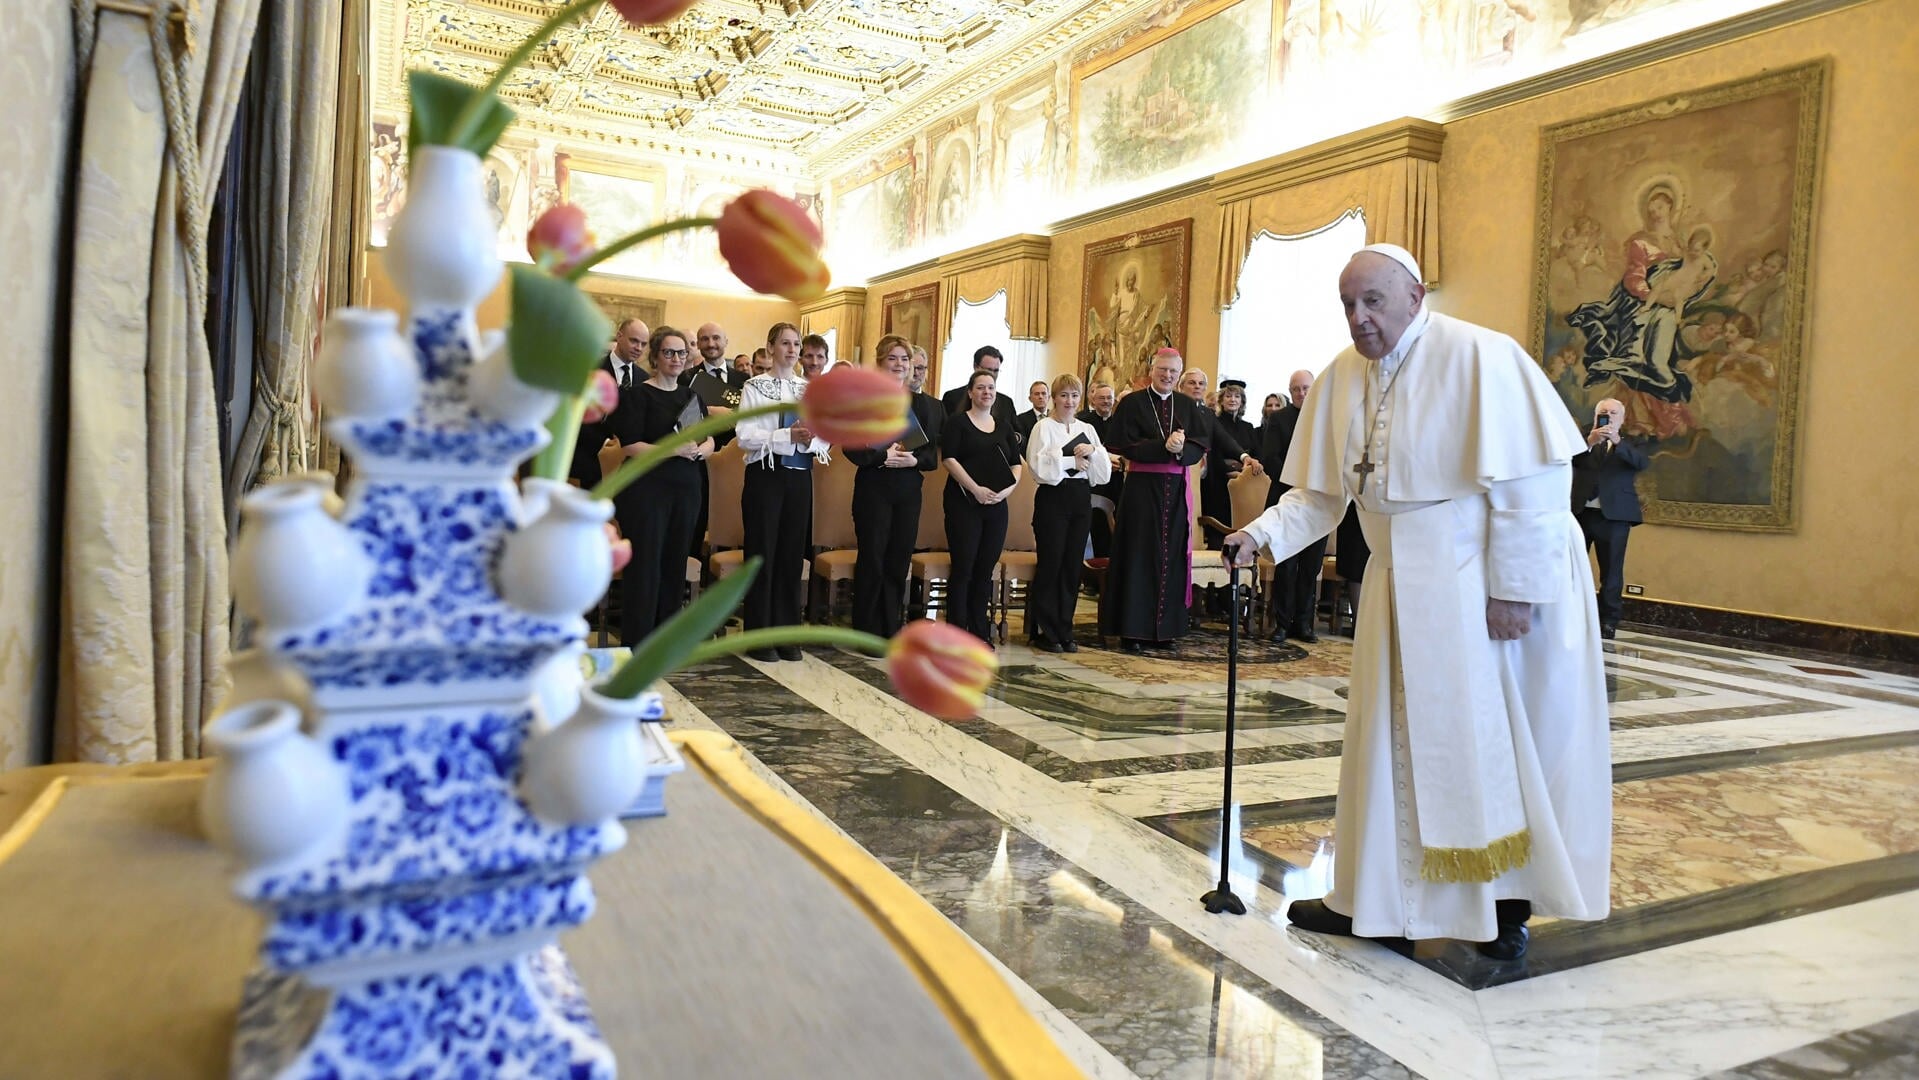 Paus Franciscus ontving zaterdagochtend een delegatie uit Amsterdam. Zij boden hem een speciale Fratelli Tutti-tulp aan. Op de foto staat de Paul Gallagher-tulp, genoemd naar de Vaticaanse 'minister van Buitenlandse Zaken'.